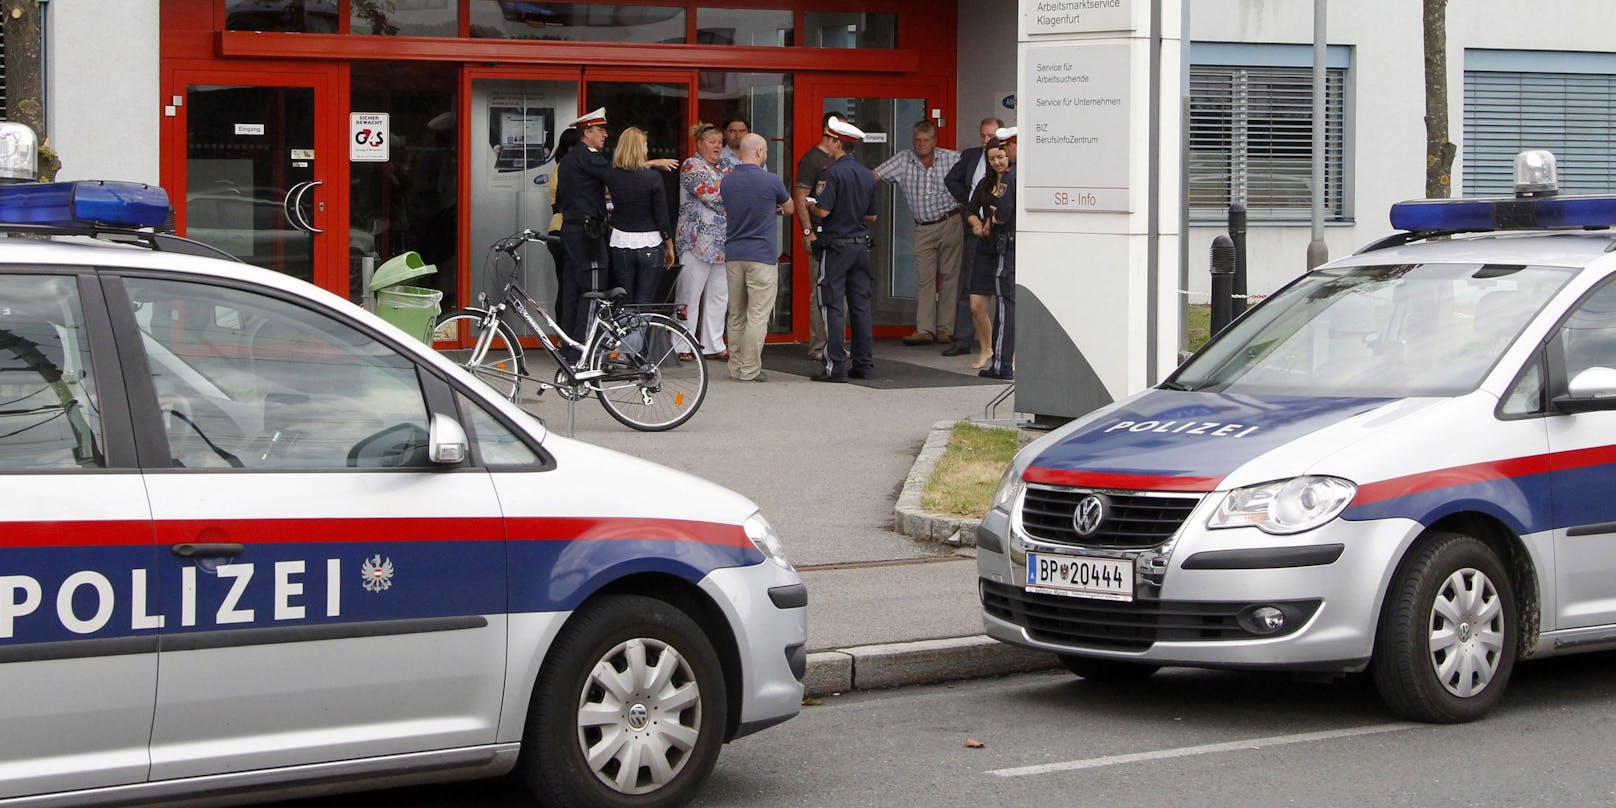 Polizei-Einsatz in Klagenfurt (Archivfoto)